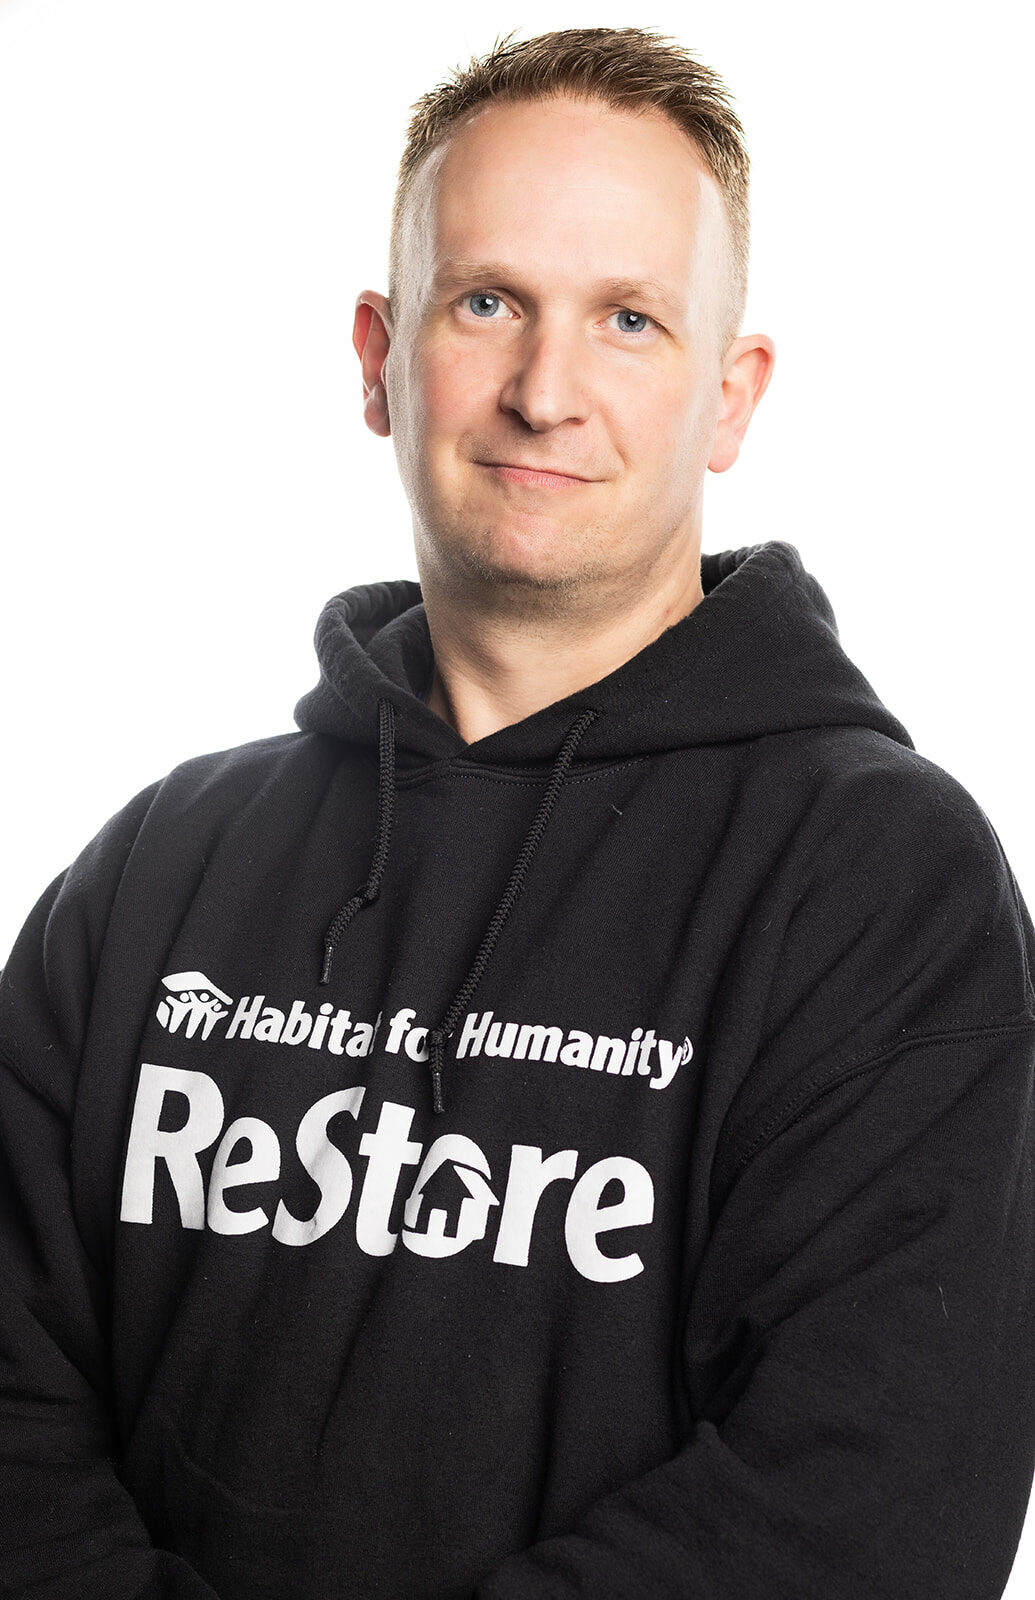 Steve in his black ReStore hoody